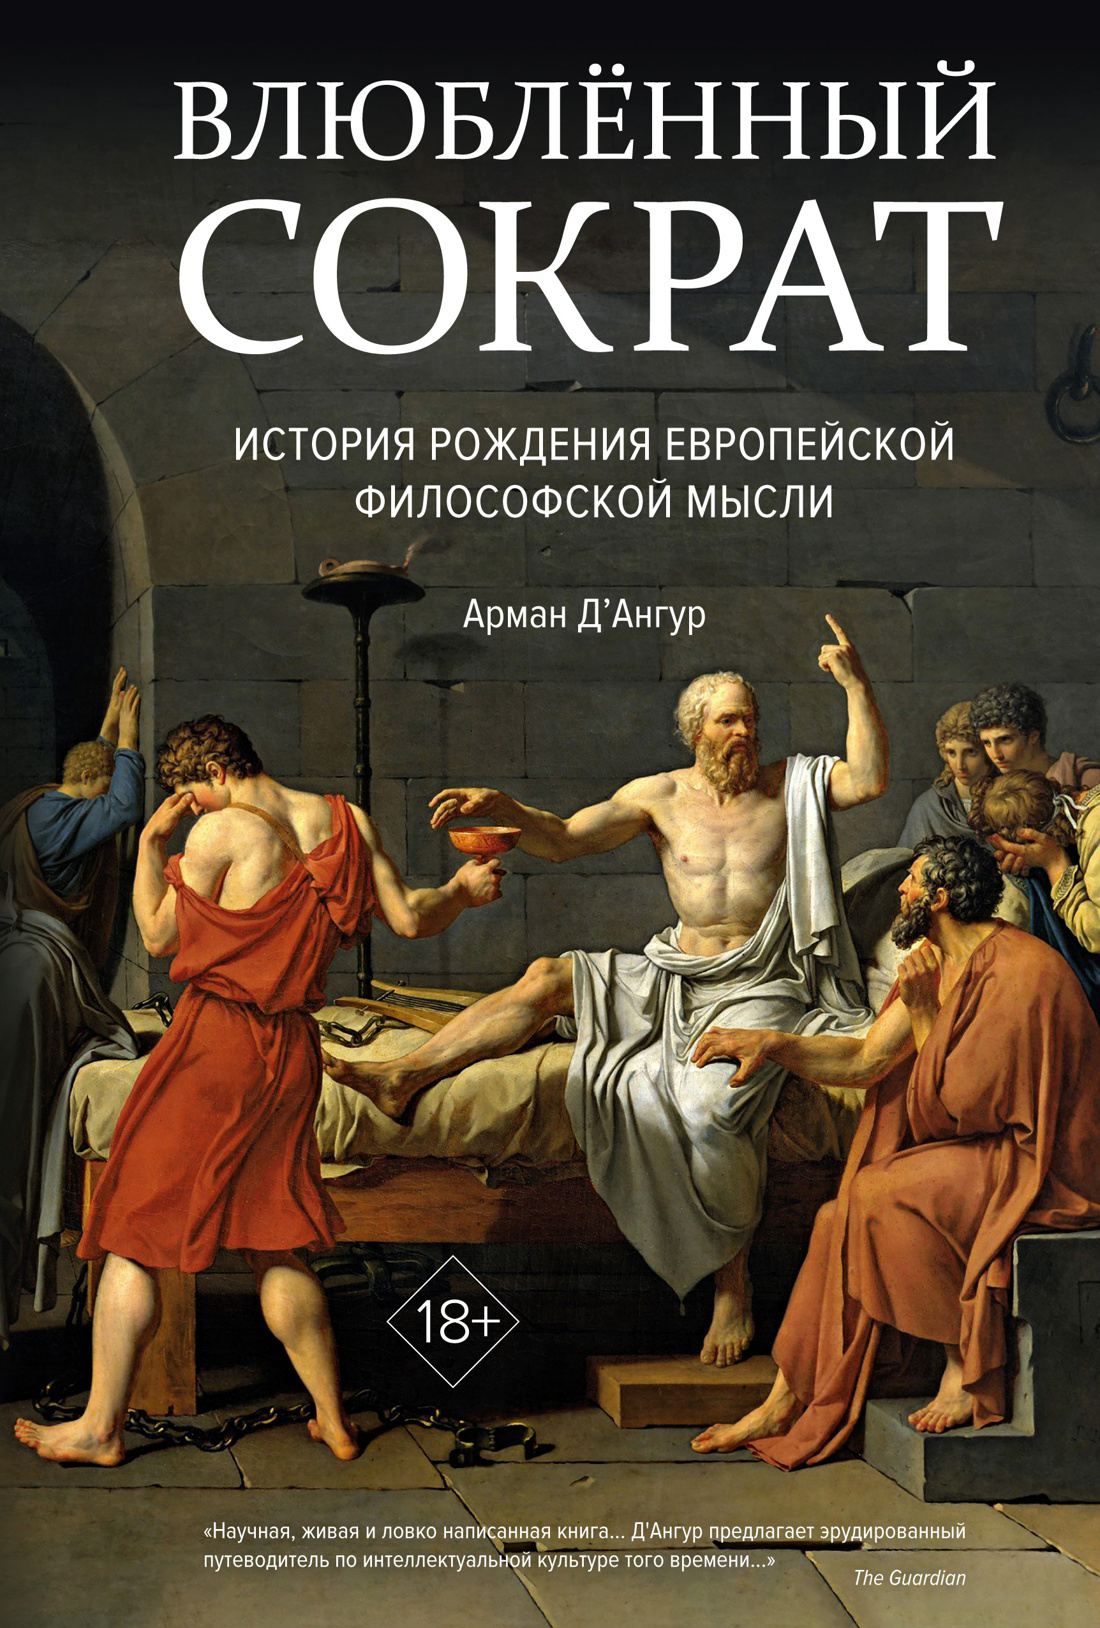 Влюбленный Сократ. История рождения европейской философской мысли мокаддам салим влюбленный сократ